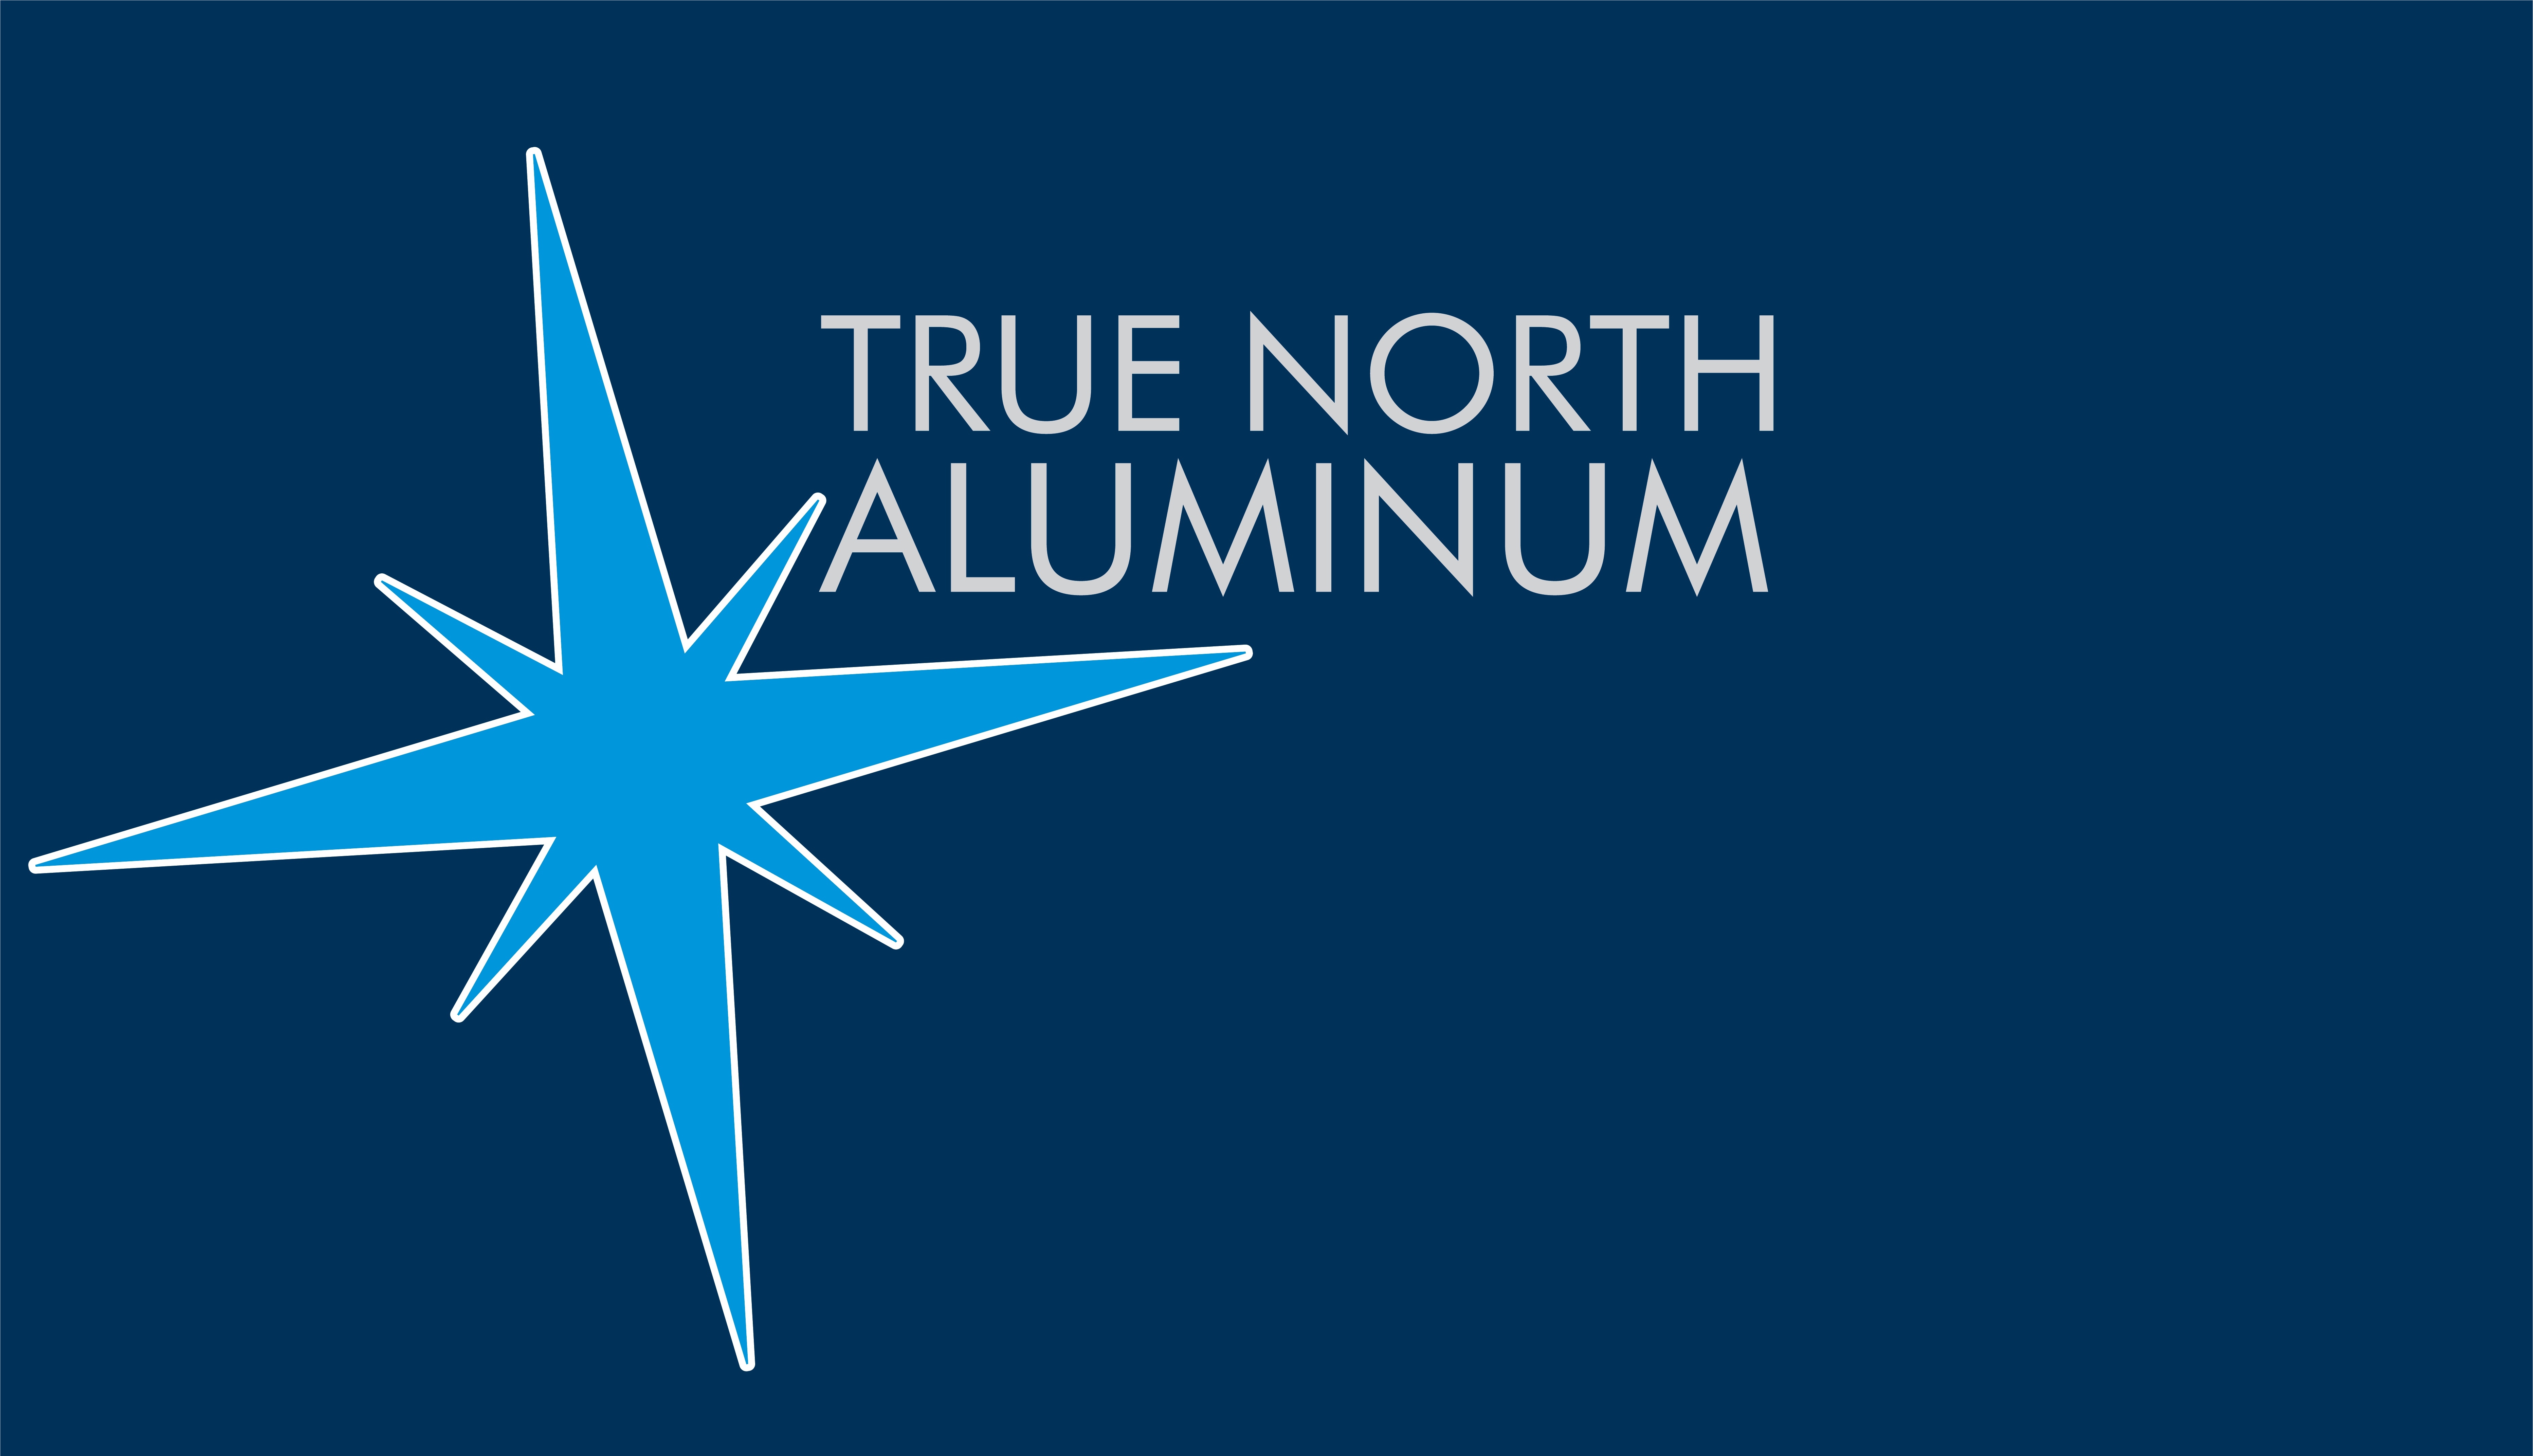 True North Aluminium 's logo